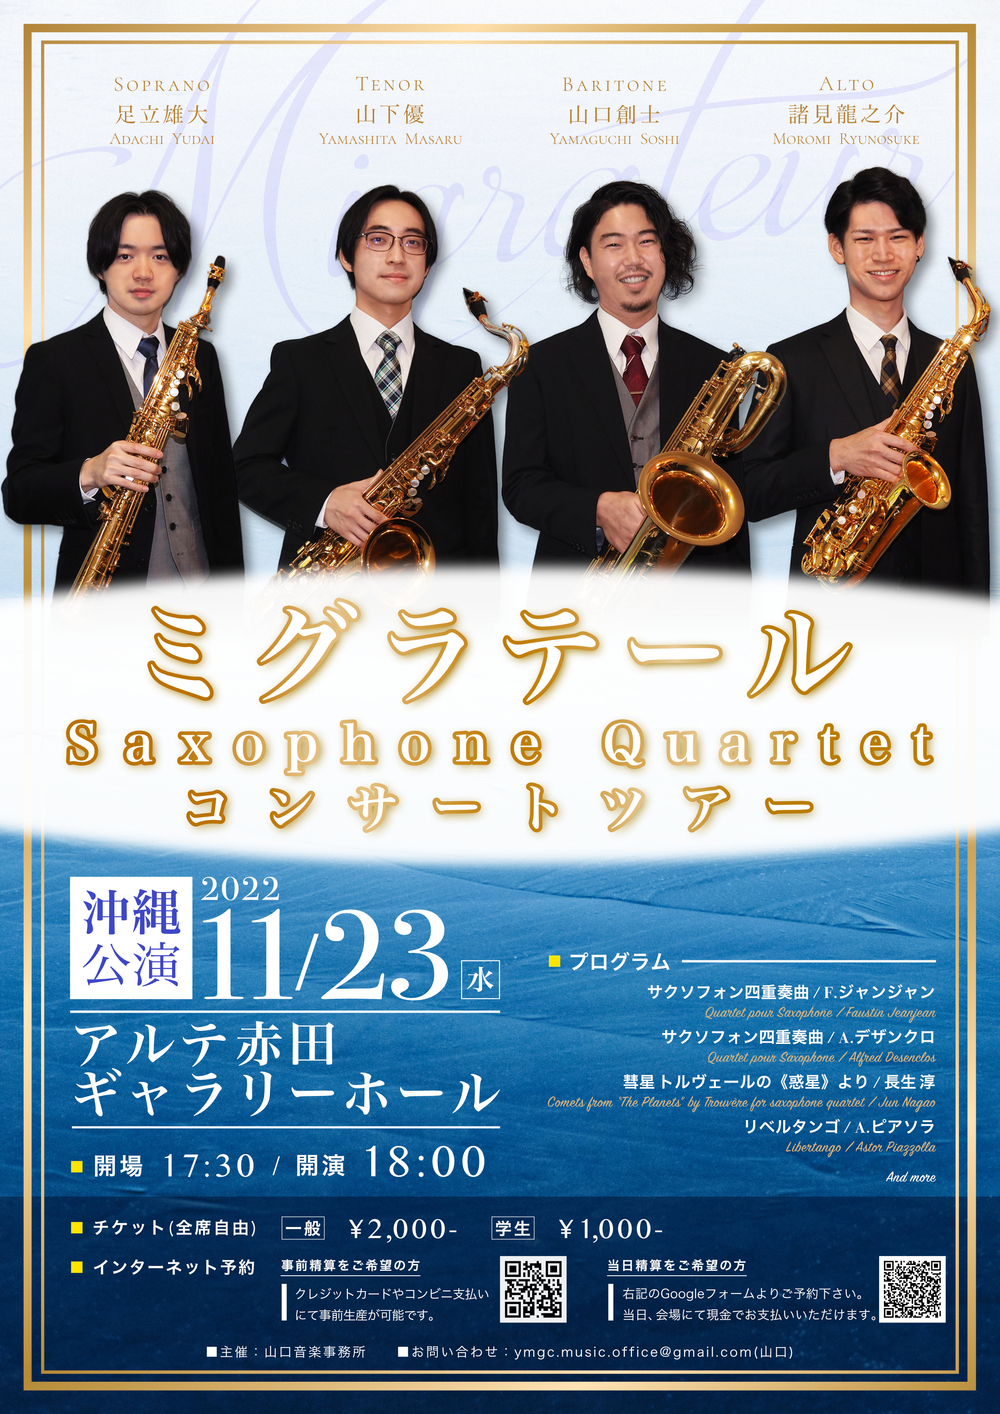 ミグラテール Saxophone Quartet コンサートツアー 沖縄公演【山口音楽